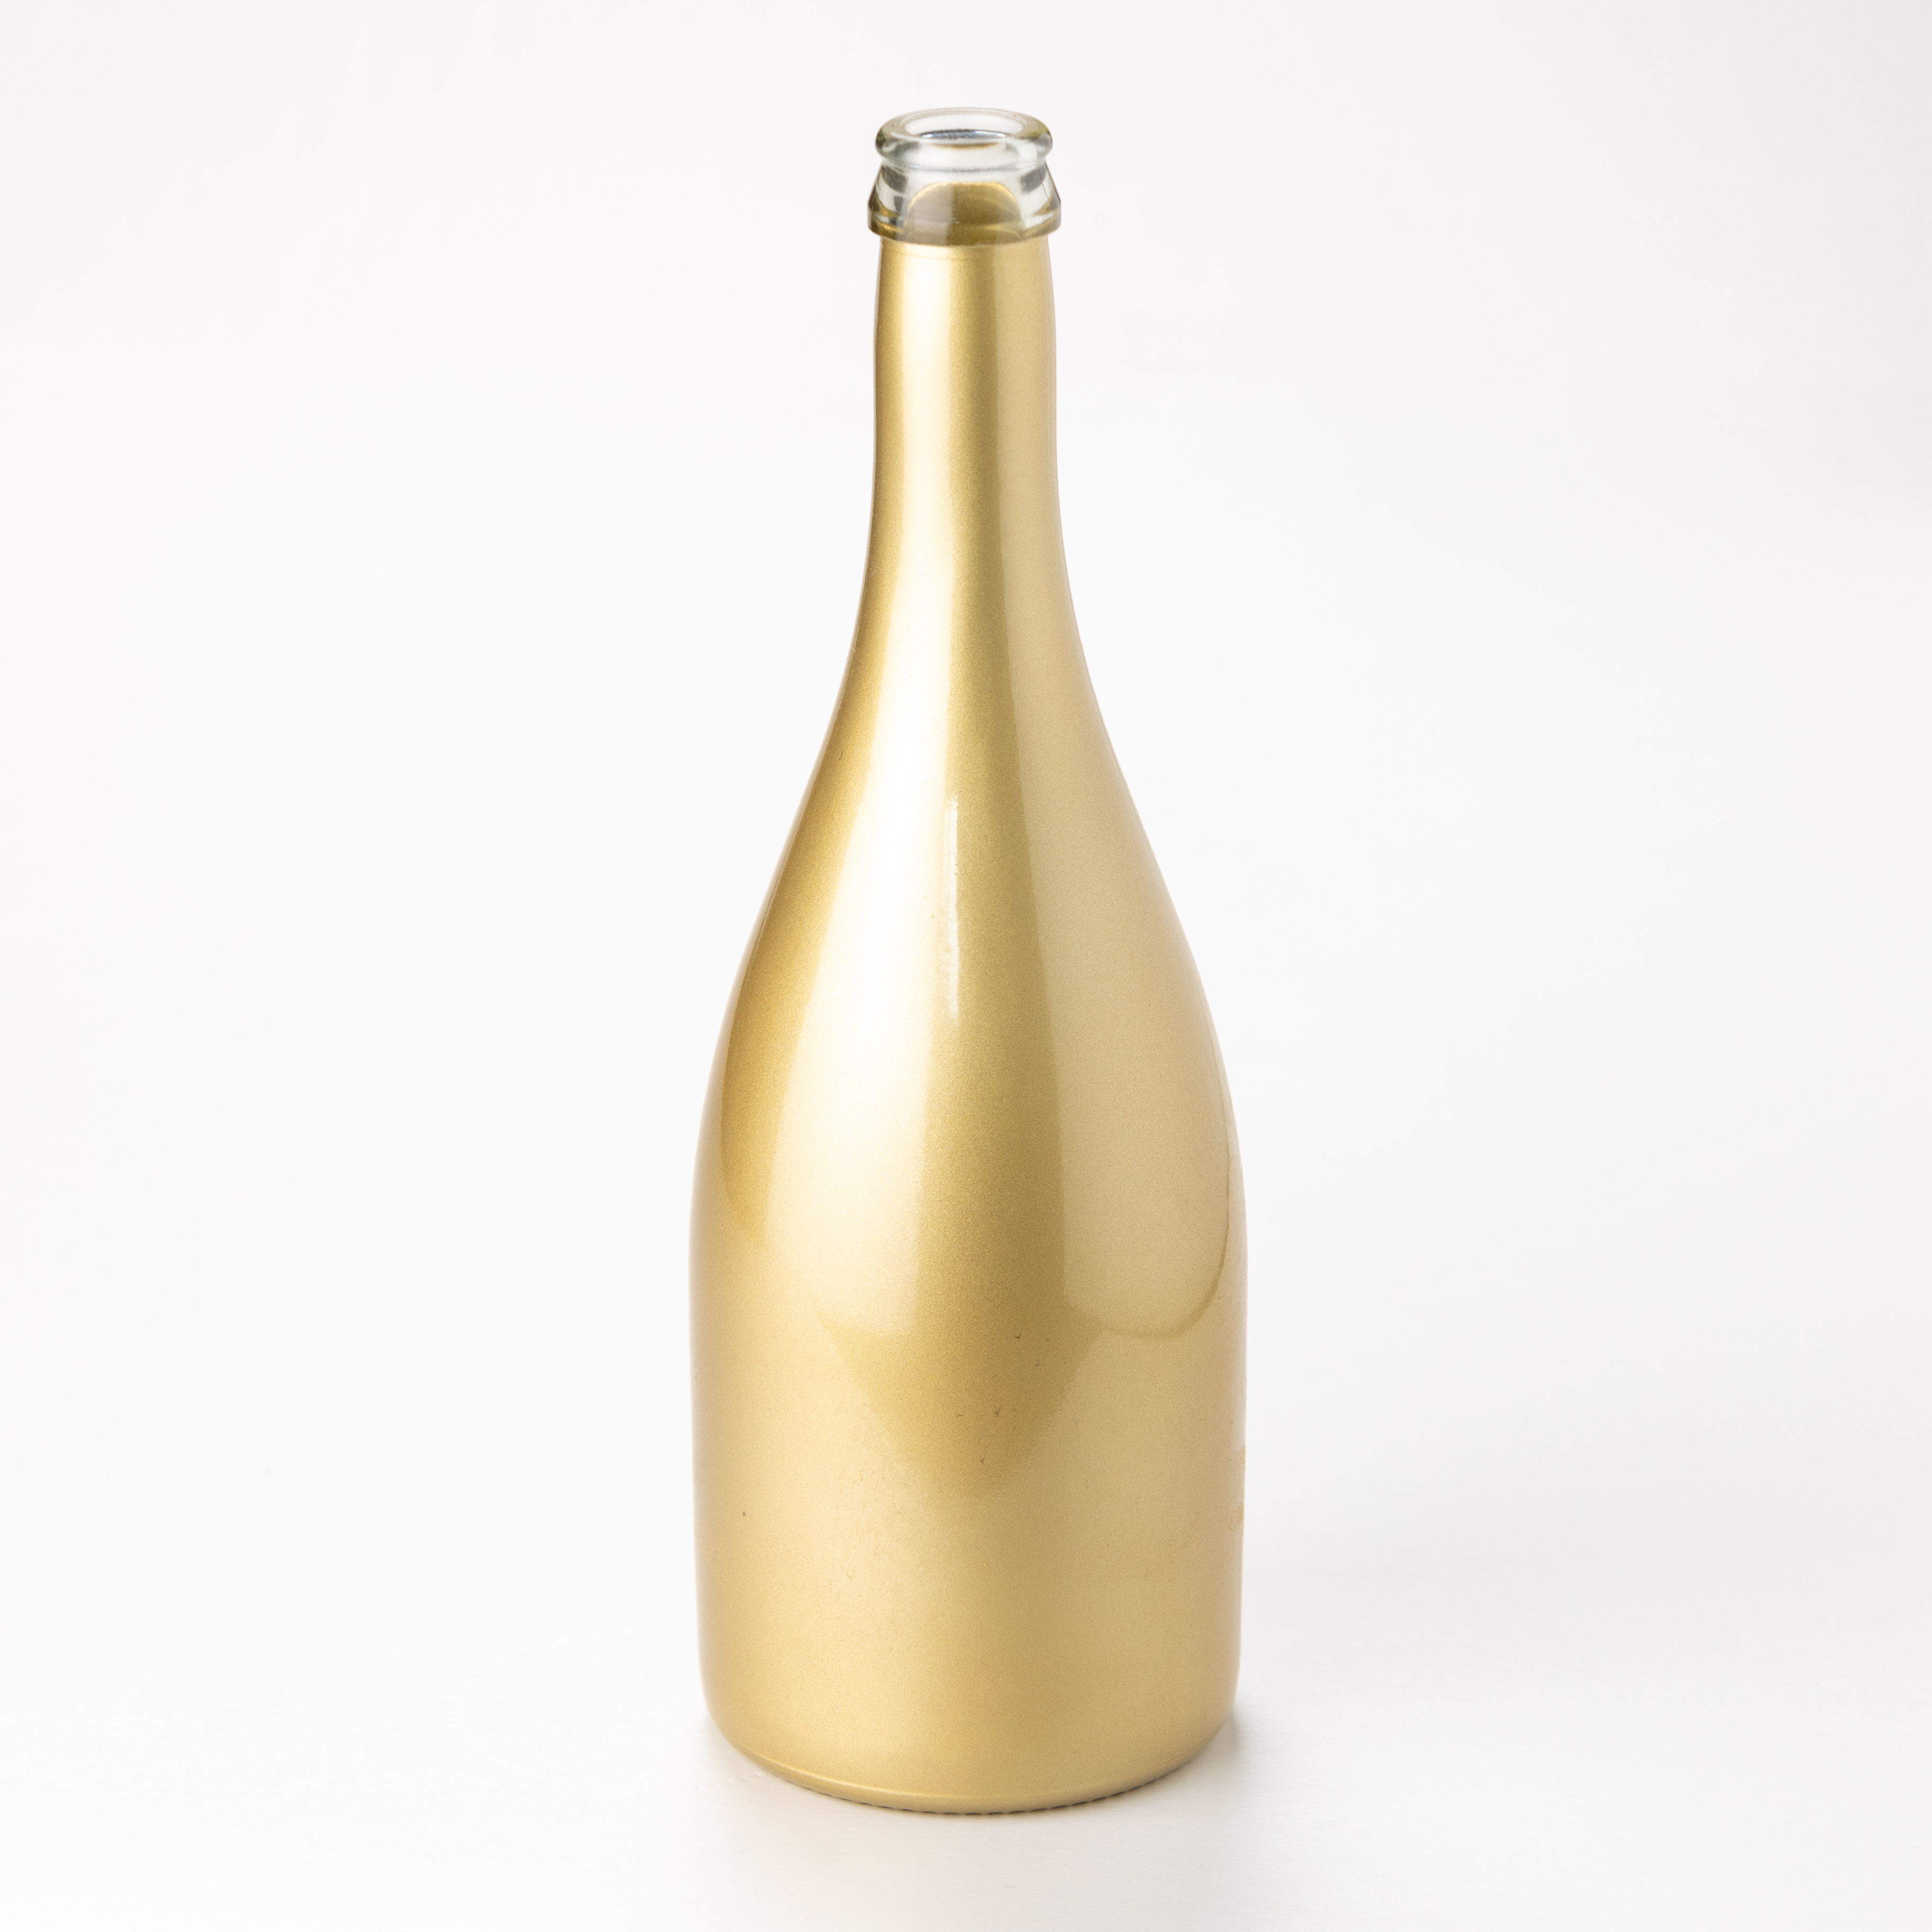 Electroplated golden bottles